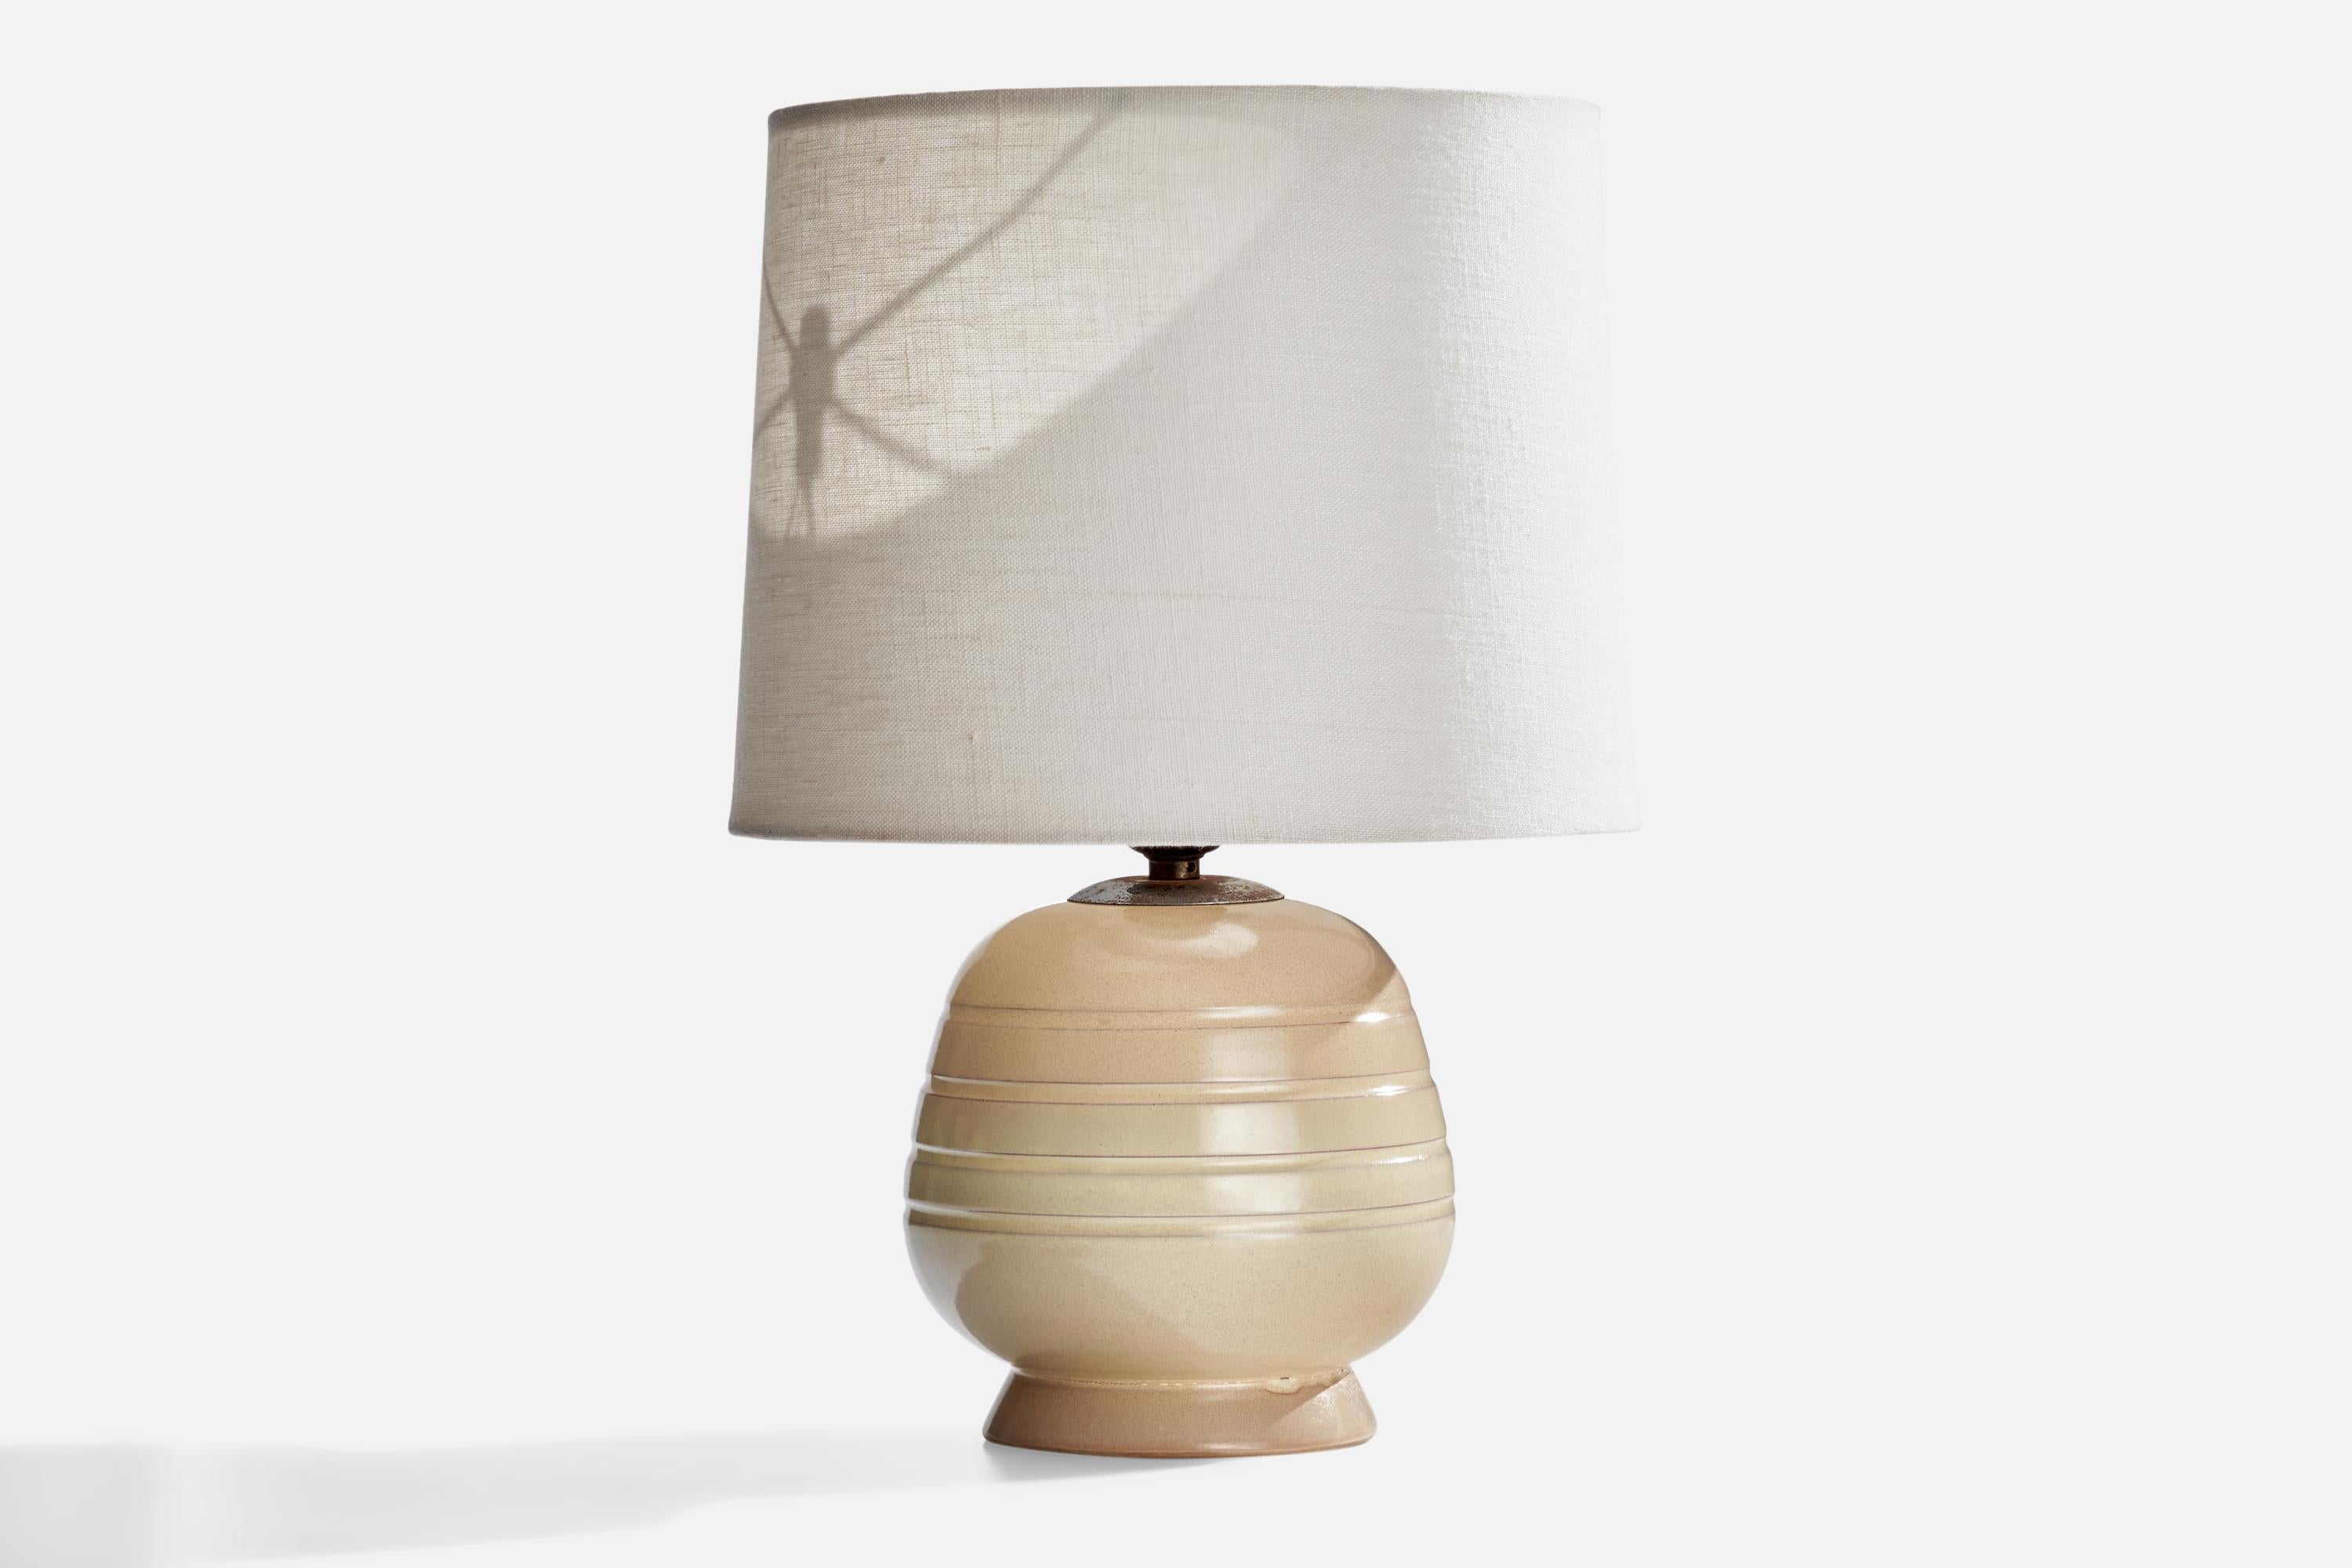 Lampe de table beige crème conçue et produite en Suède, C.C..

Dimensions de la lampe (pouces) : 9.25